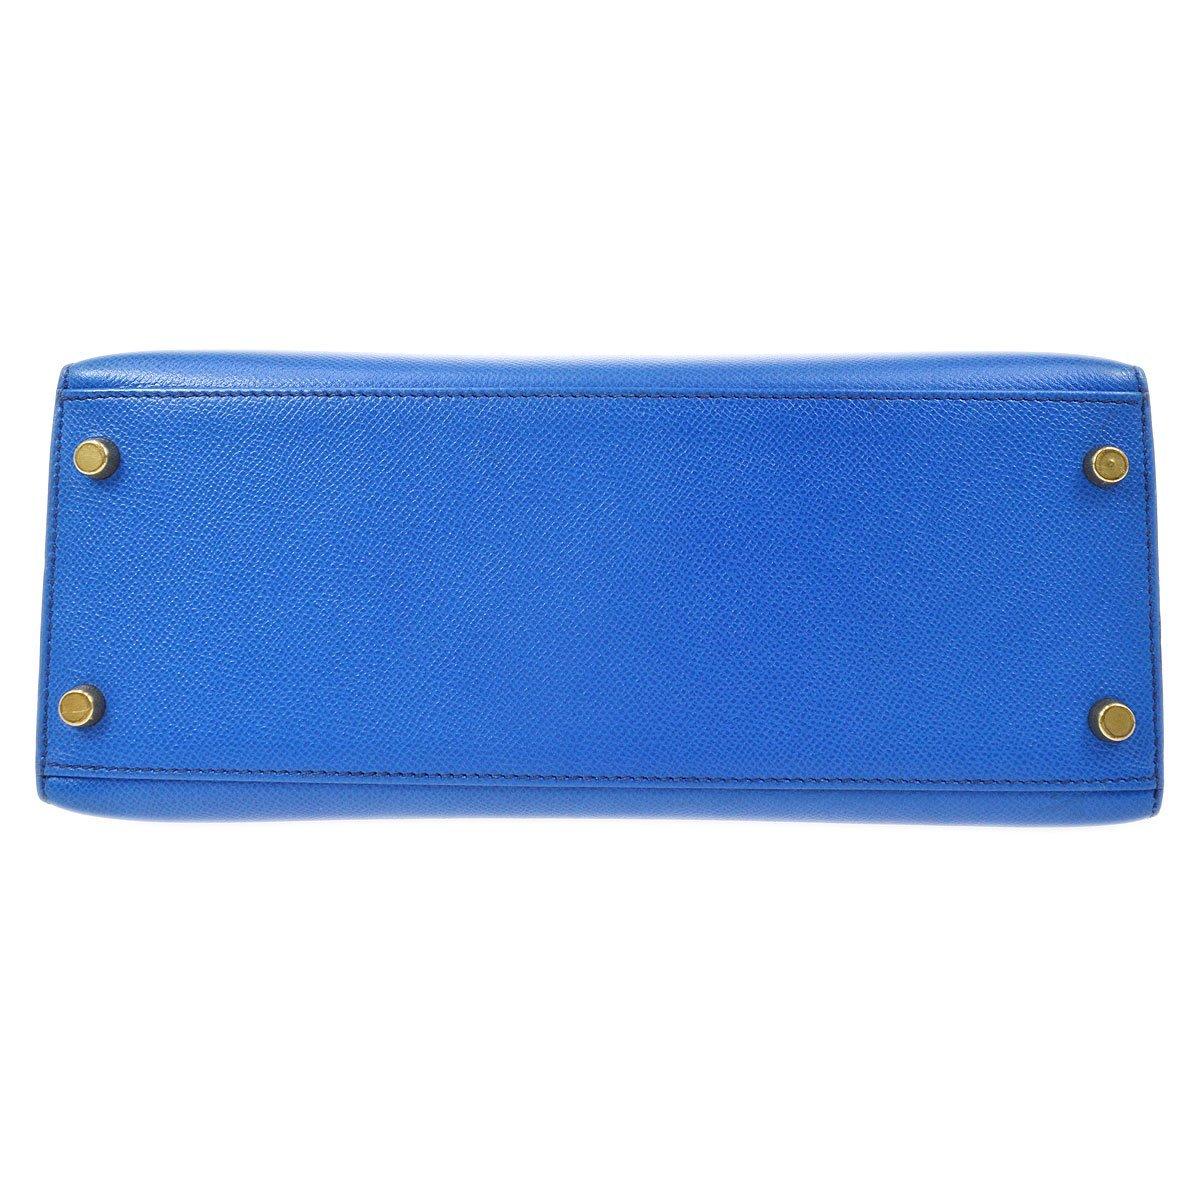 Hermes Kelly 28 Blue Leather Gold  Top Handle Satchel Tote Shoulder Bag  1